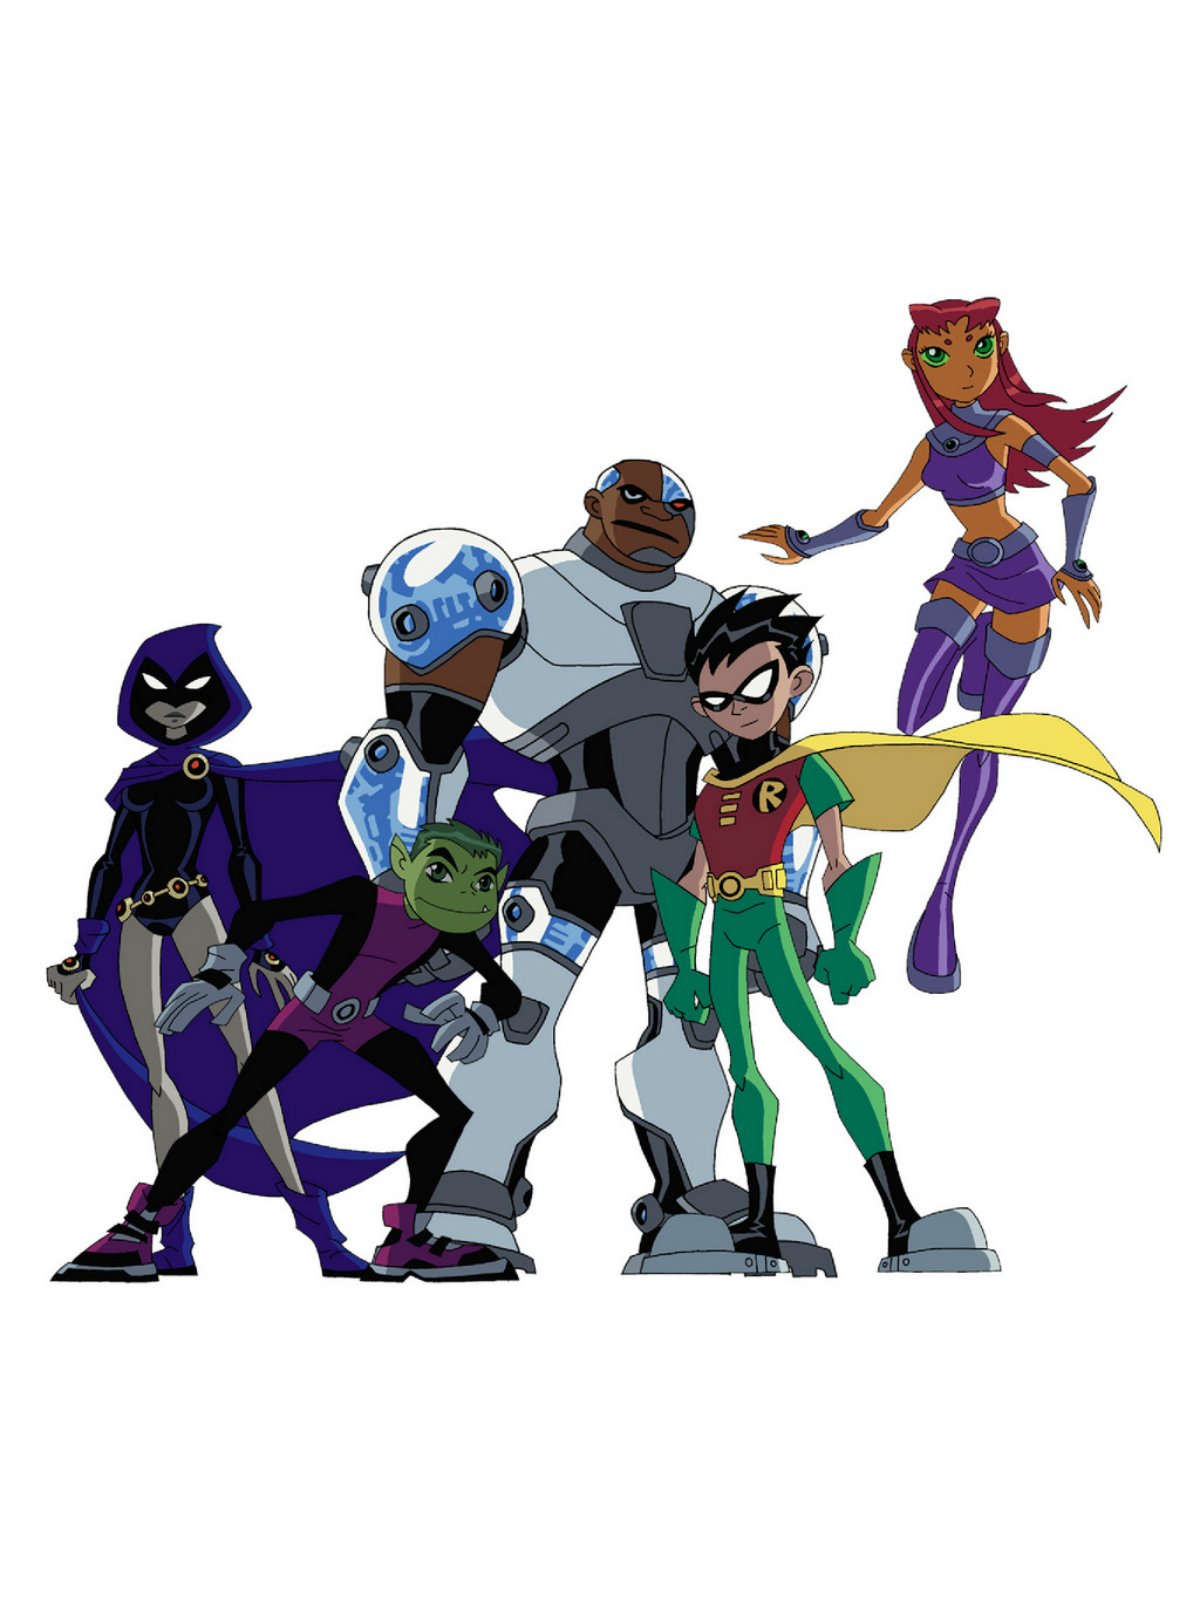 Petición · Retomar la serie Teen Titans (2003-2006) de Cartoon Network ·